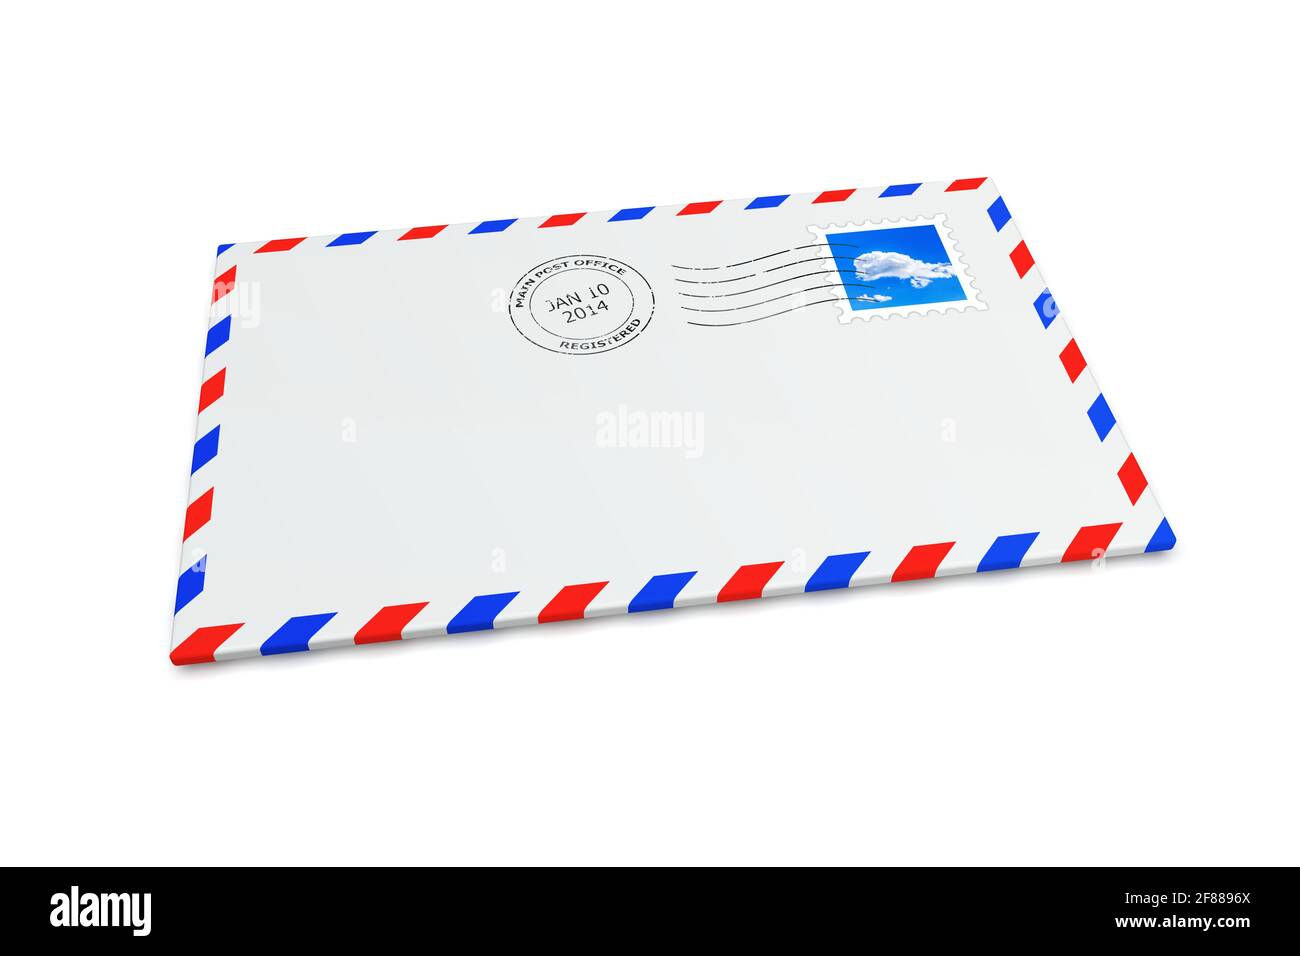 Enveloppe postale isolée avec timbre-poste et cachet postal Banque D'Images